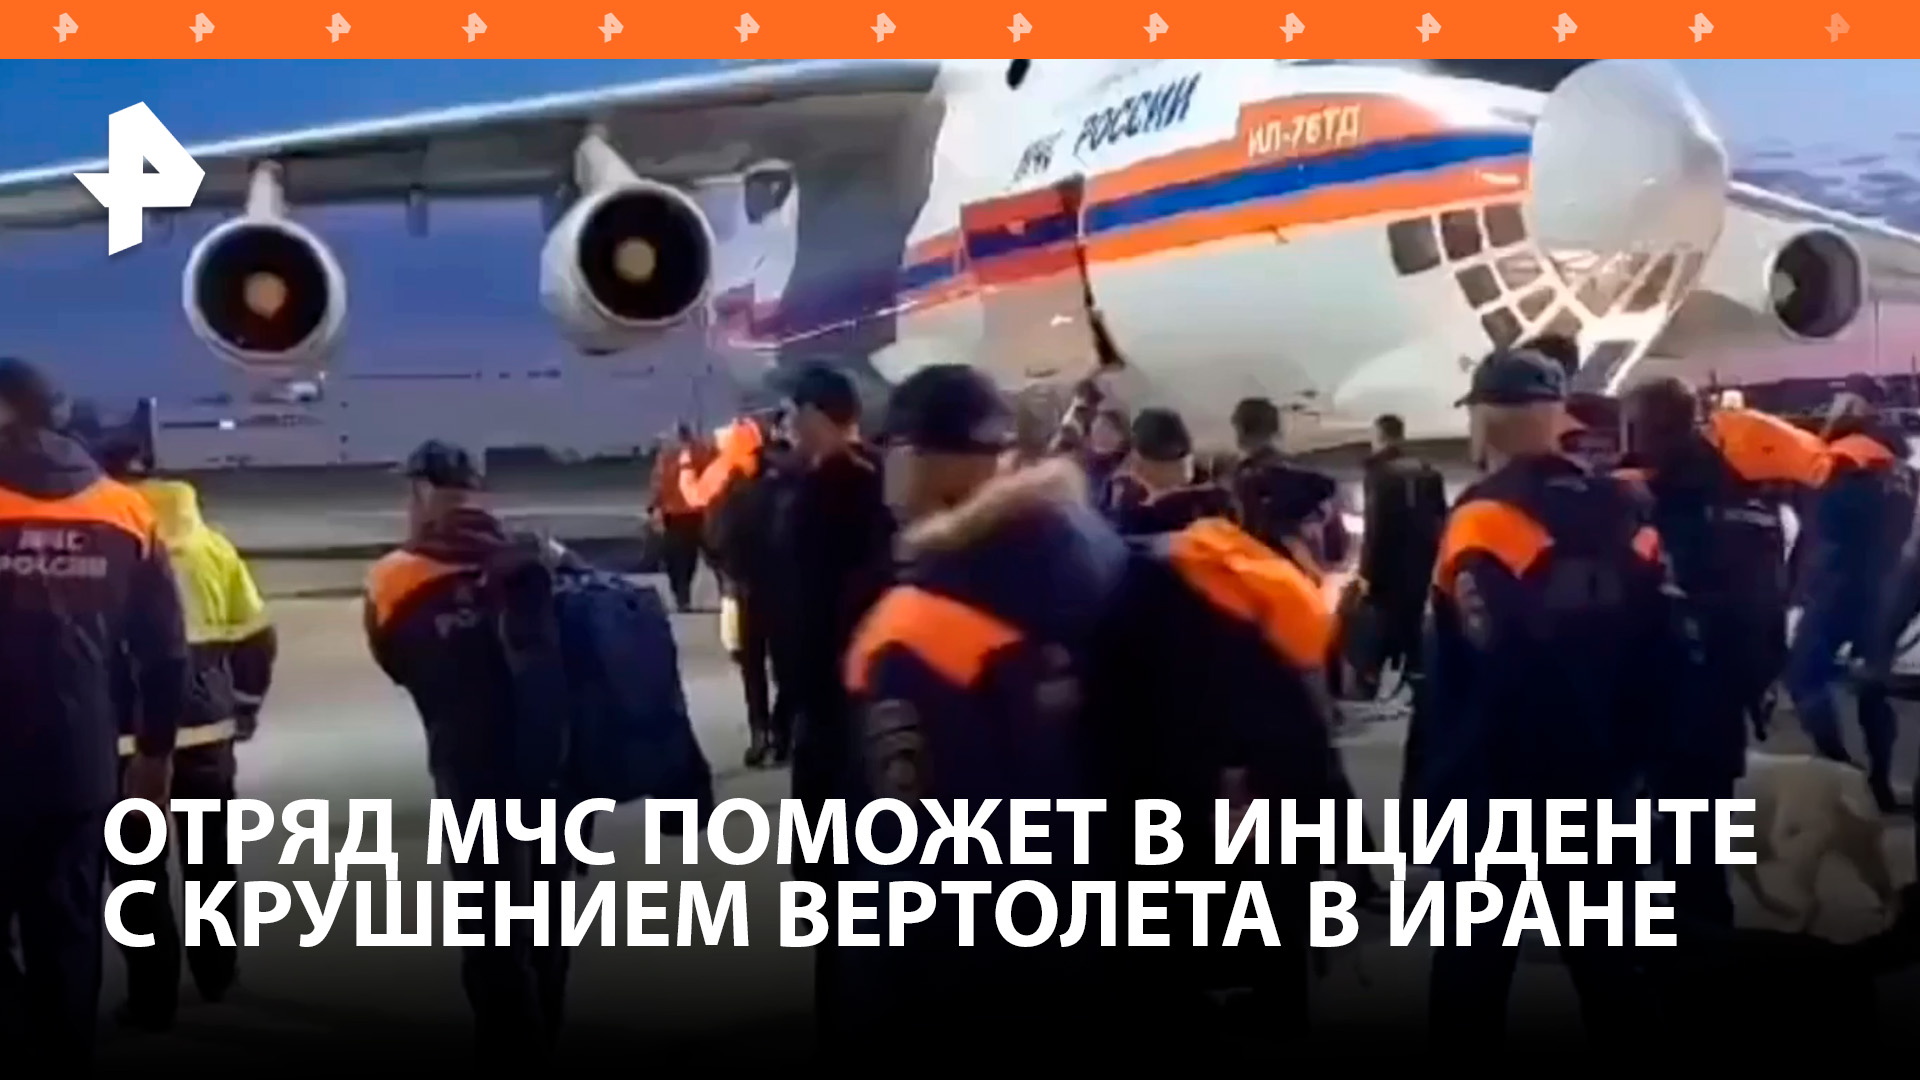 МЧС России вылетел в Тебриз для помощи в инциденте с крушением вертолета президента Ирана